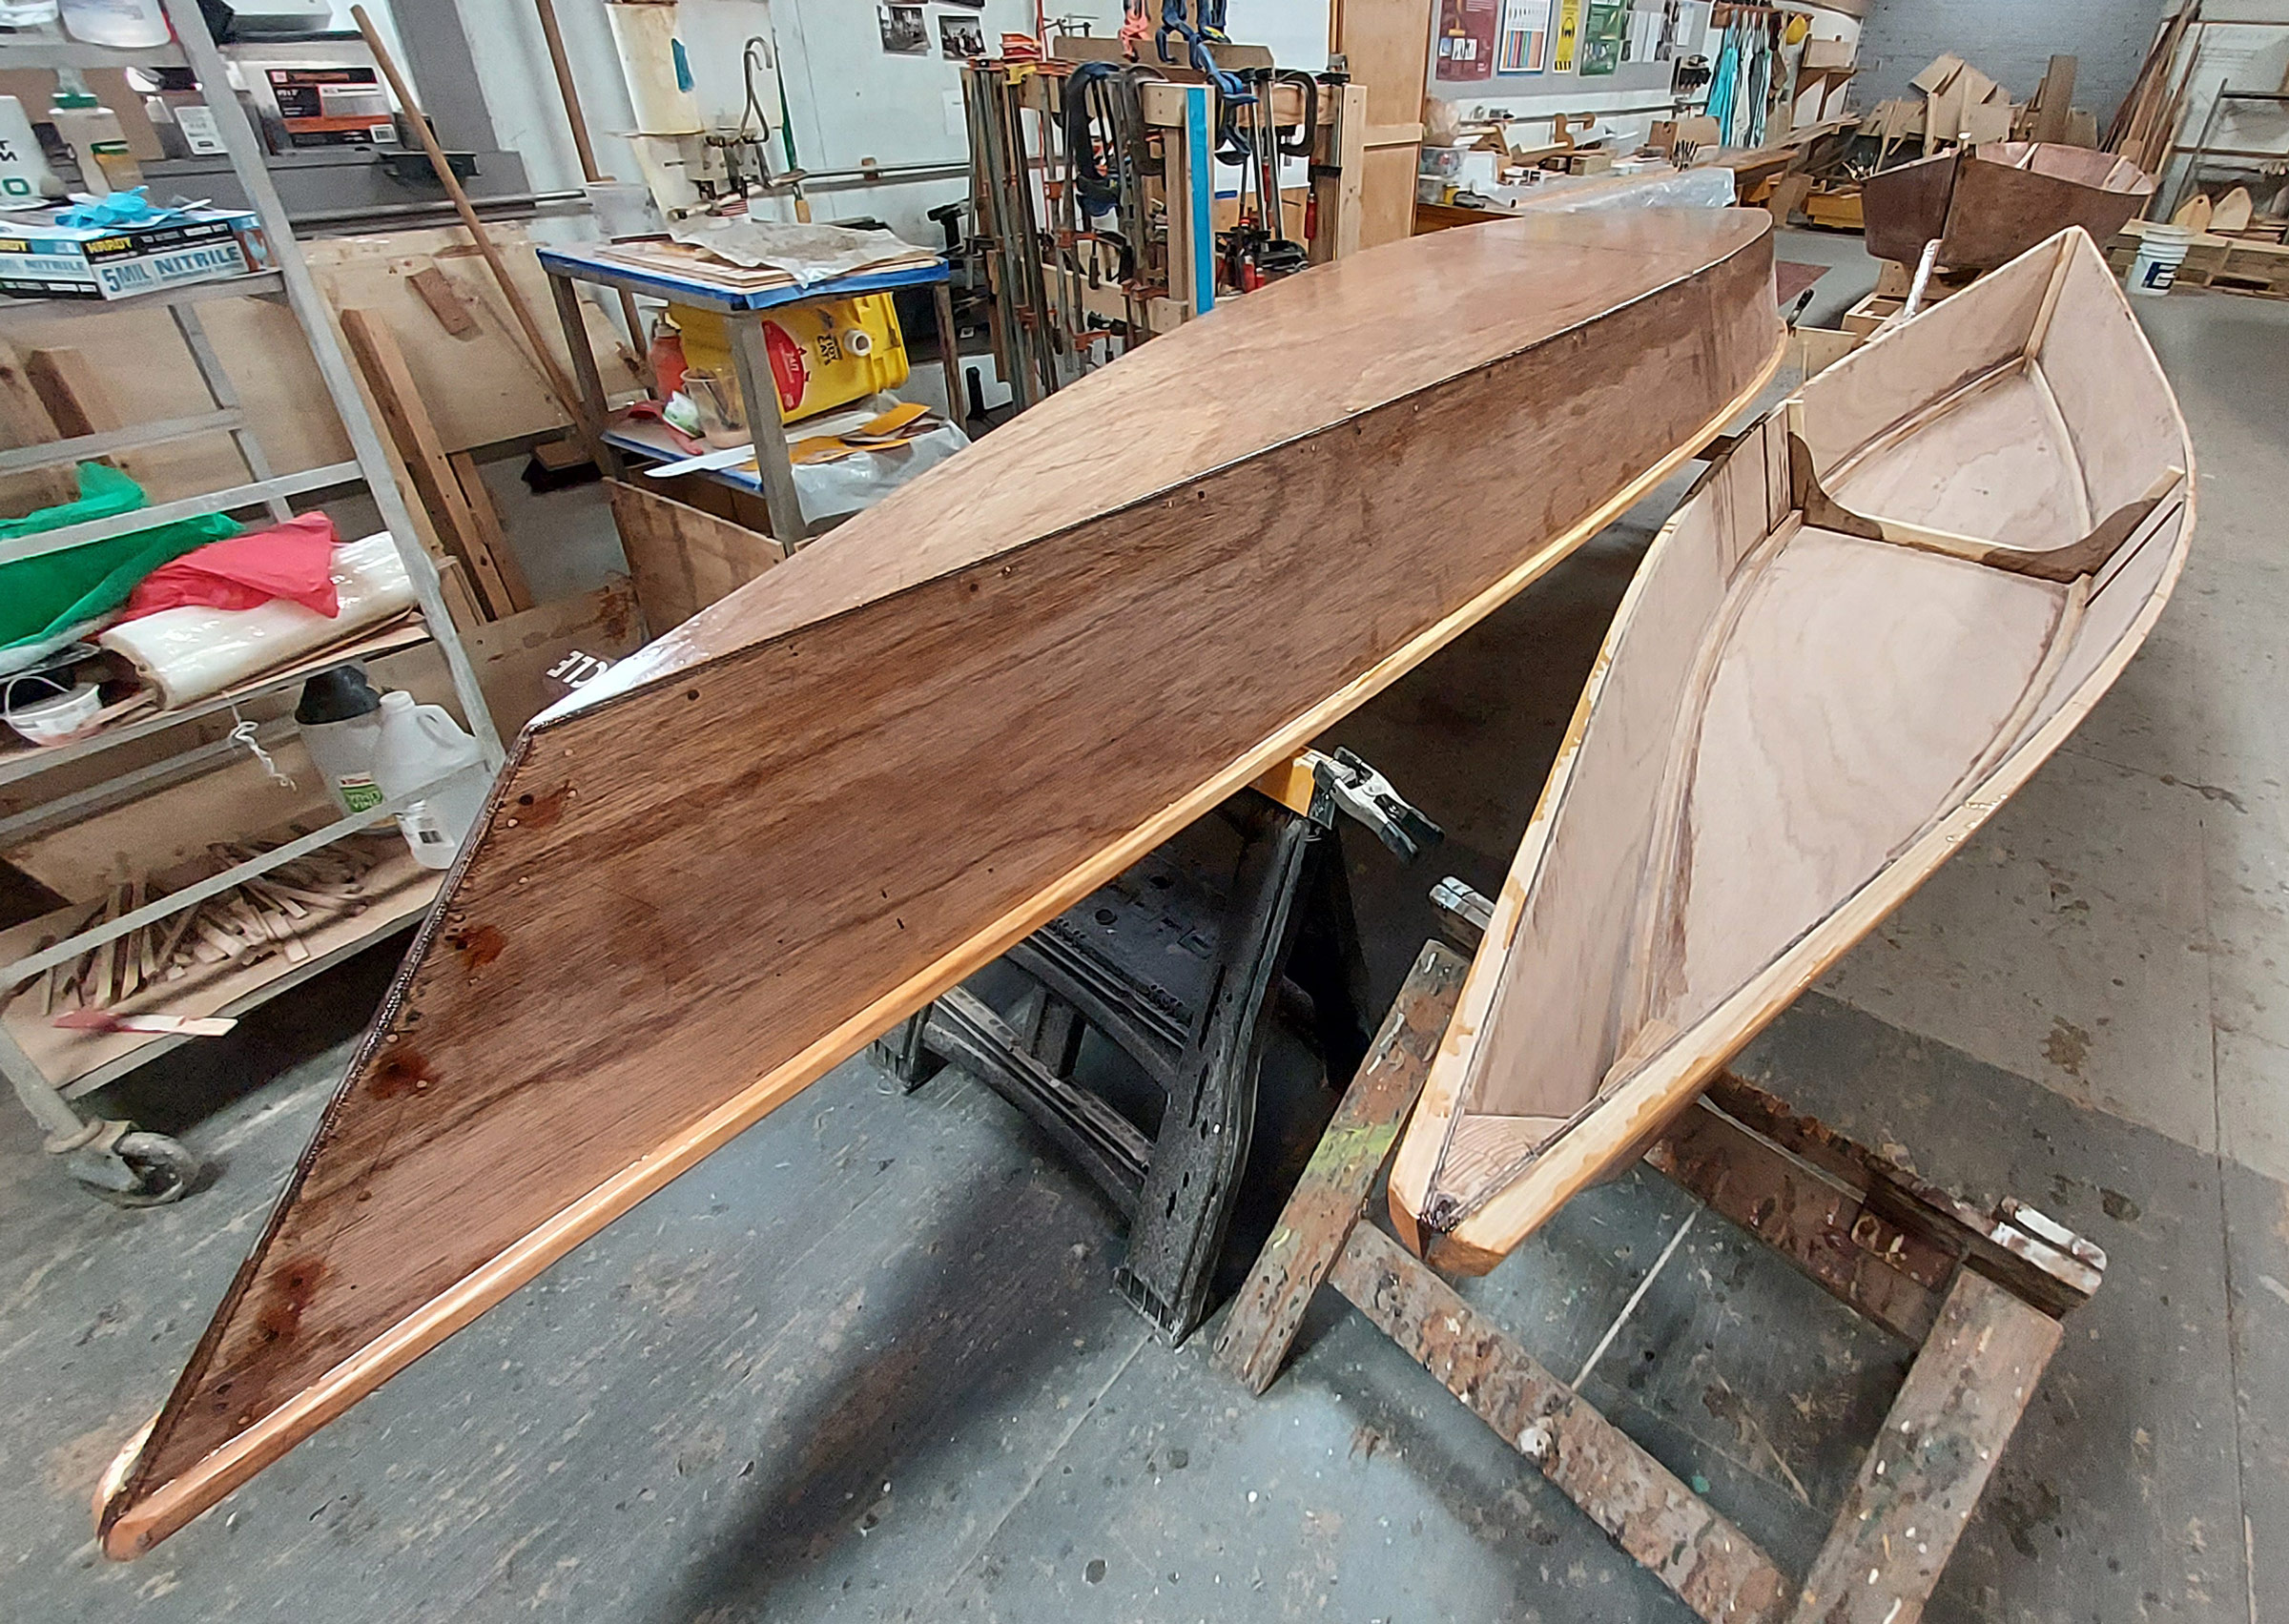 NEW-2- Economy Wood Boat Canoe Paddles Set of 2 Ready to Use! CHOOSE SIZE